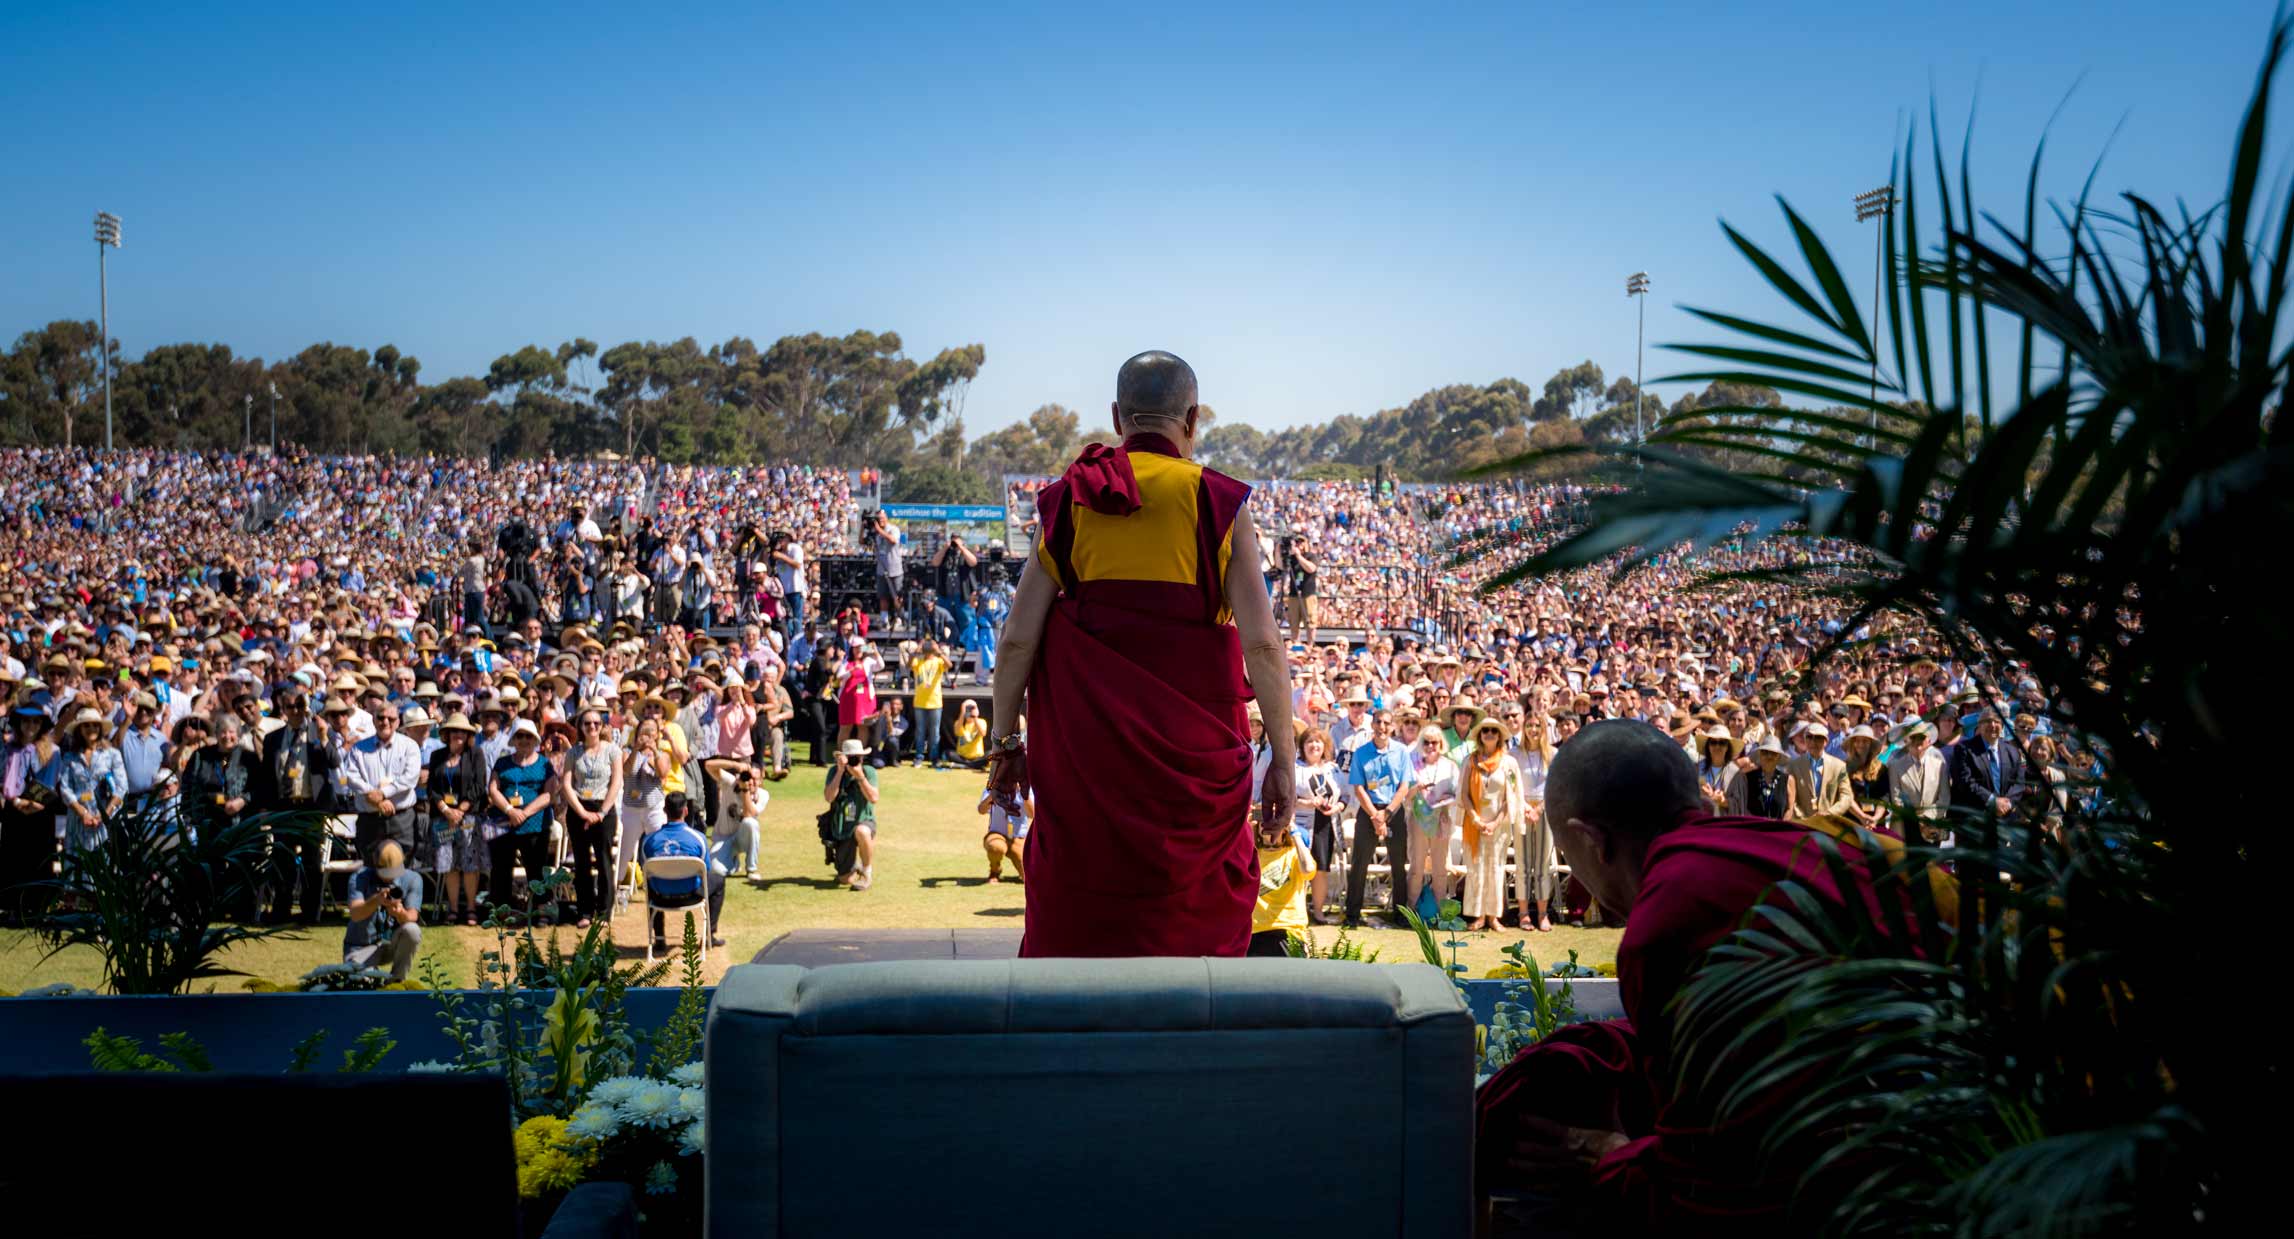 The Dalai Lama Public Address